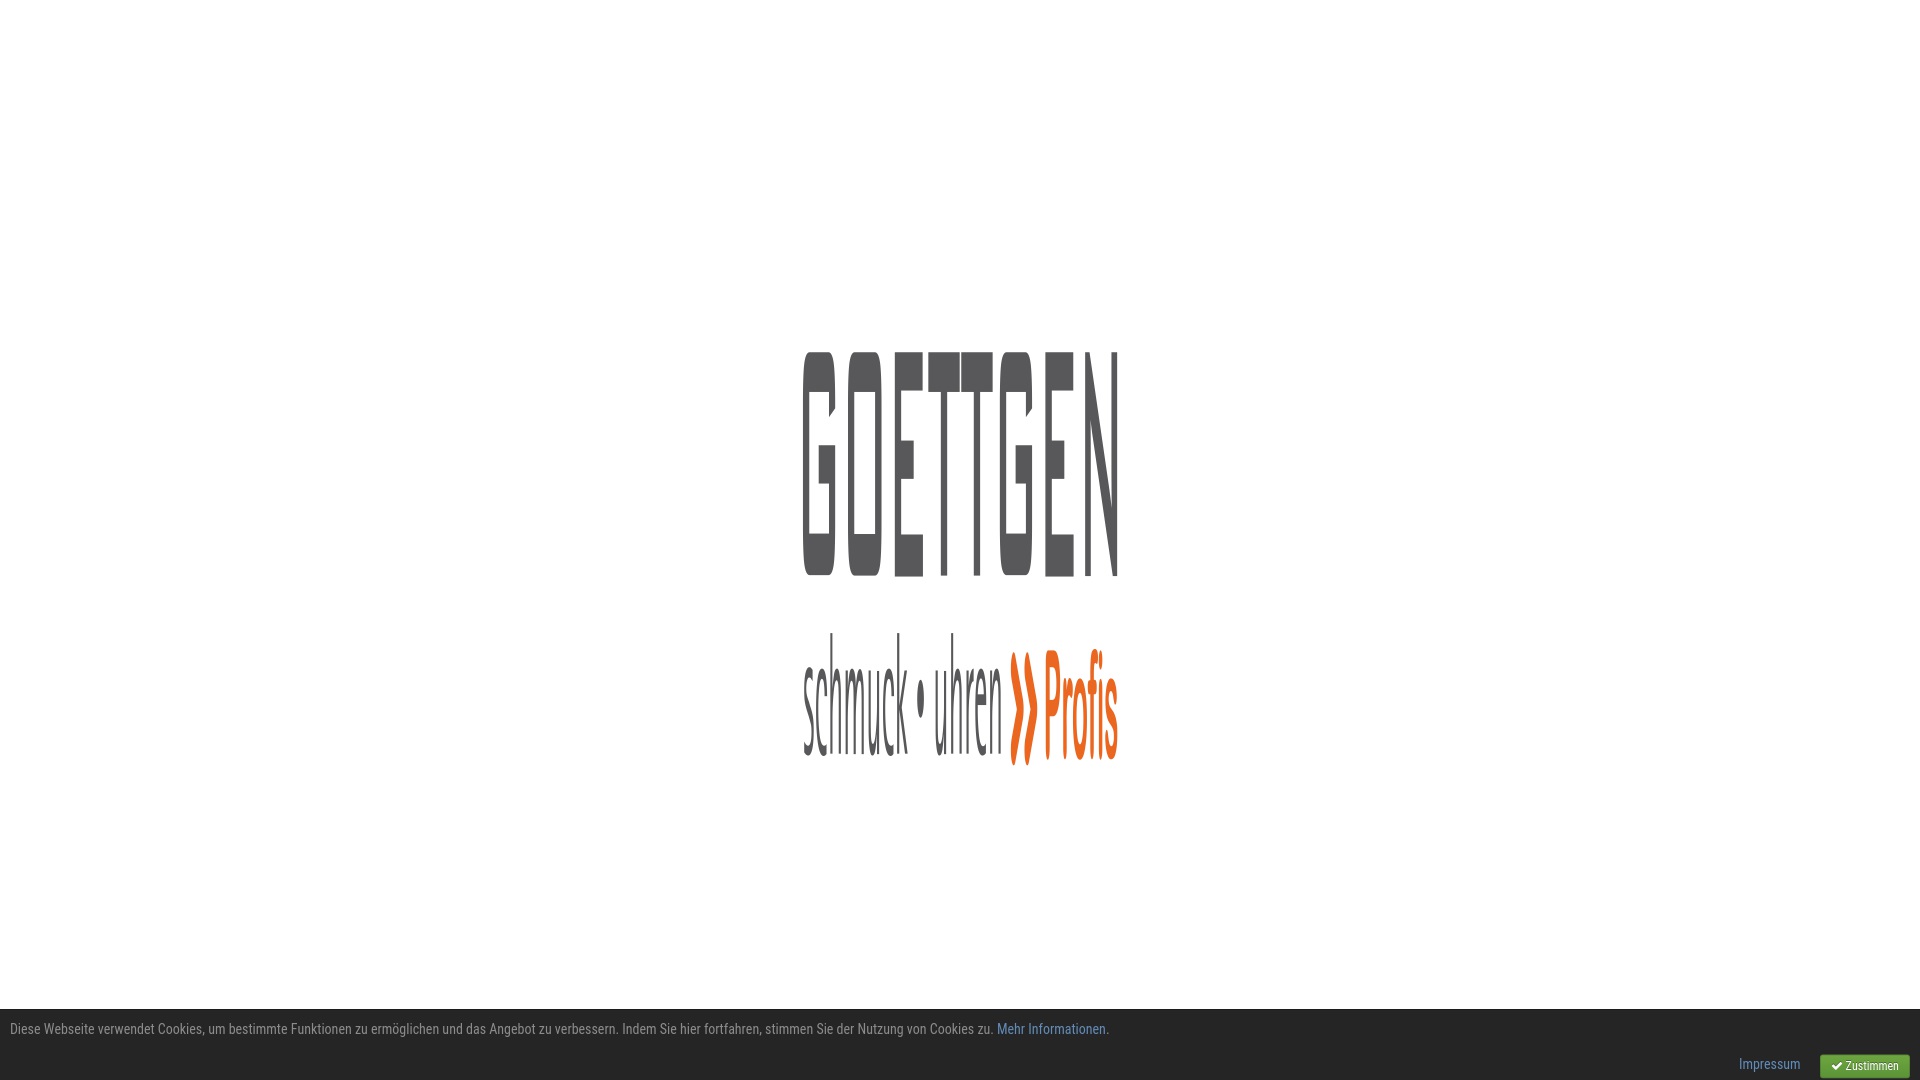 Geld zurück bei Goettgen: Jetzt im August 2022 Cashback für Goettgen sichern